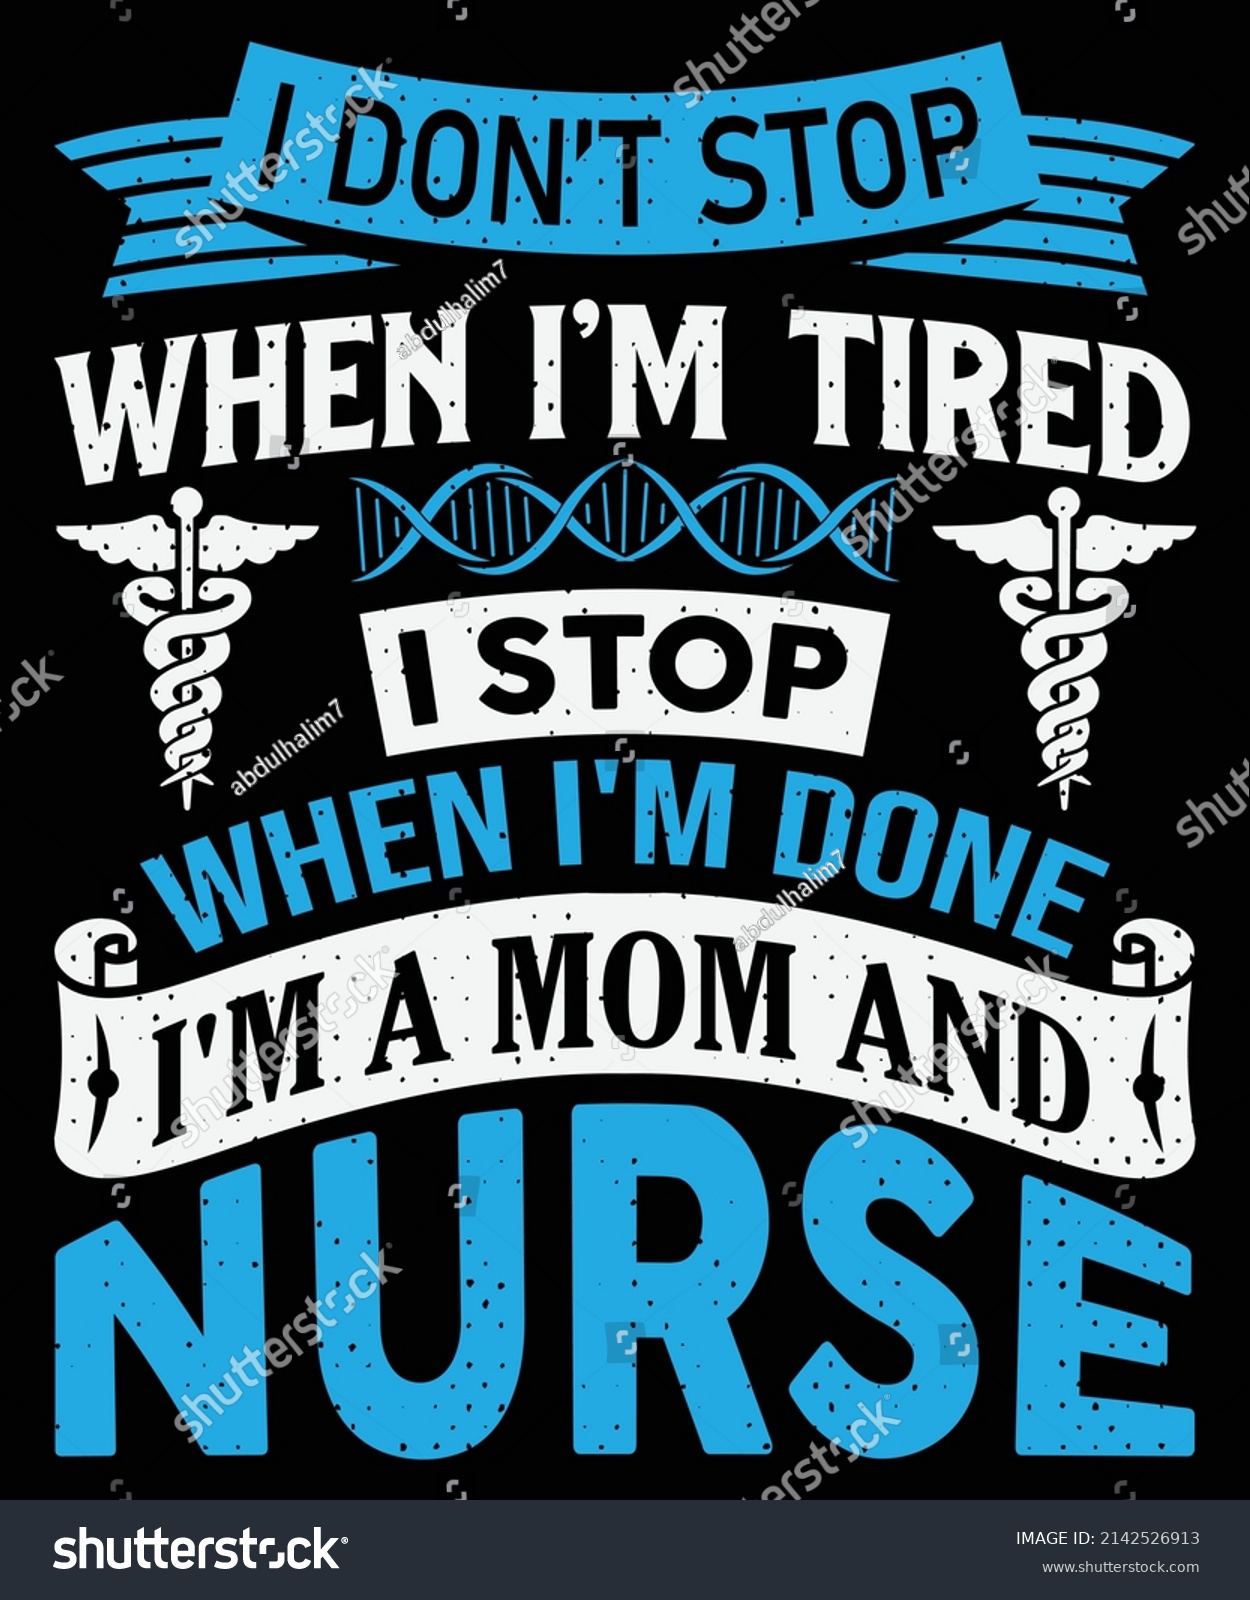 SVG of I don't stop when I'm tired, I stop when I'm done I'm a mom and nurse T-shirt design nursing t-shirt with medical element vectors. Stethoscope, syringe design. For label. svg